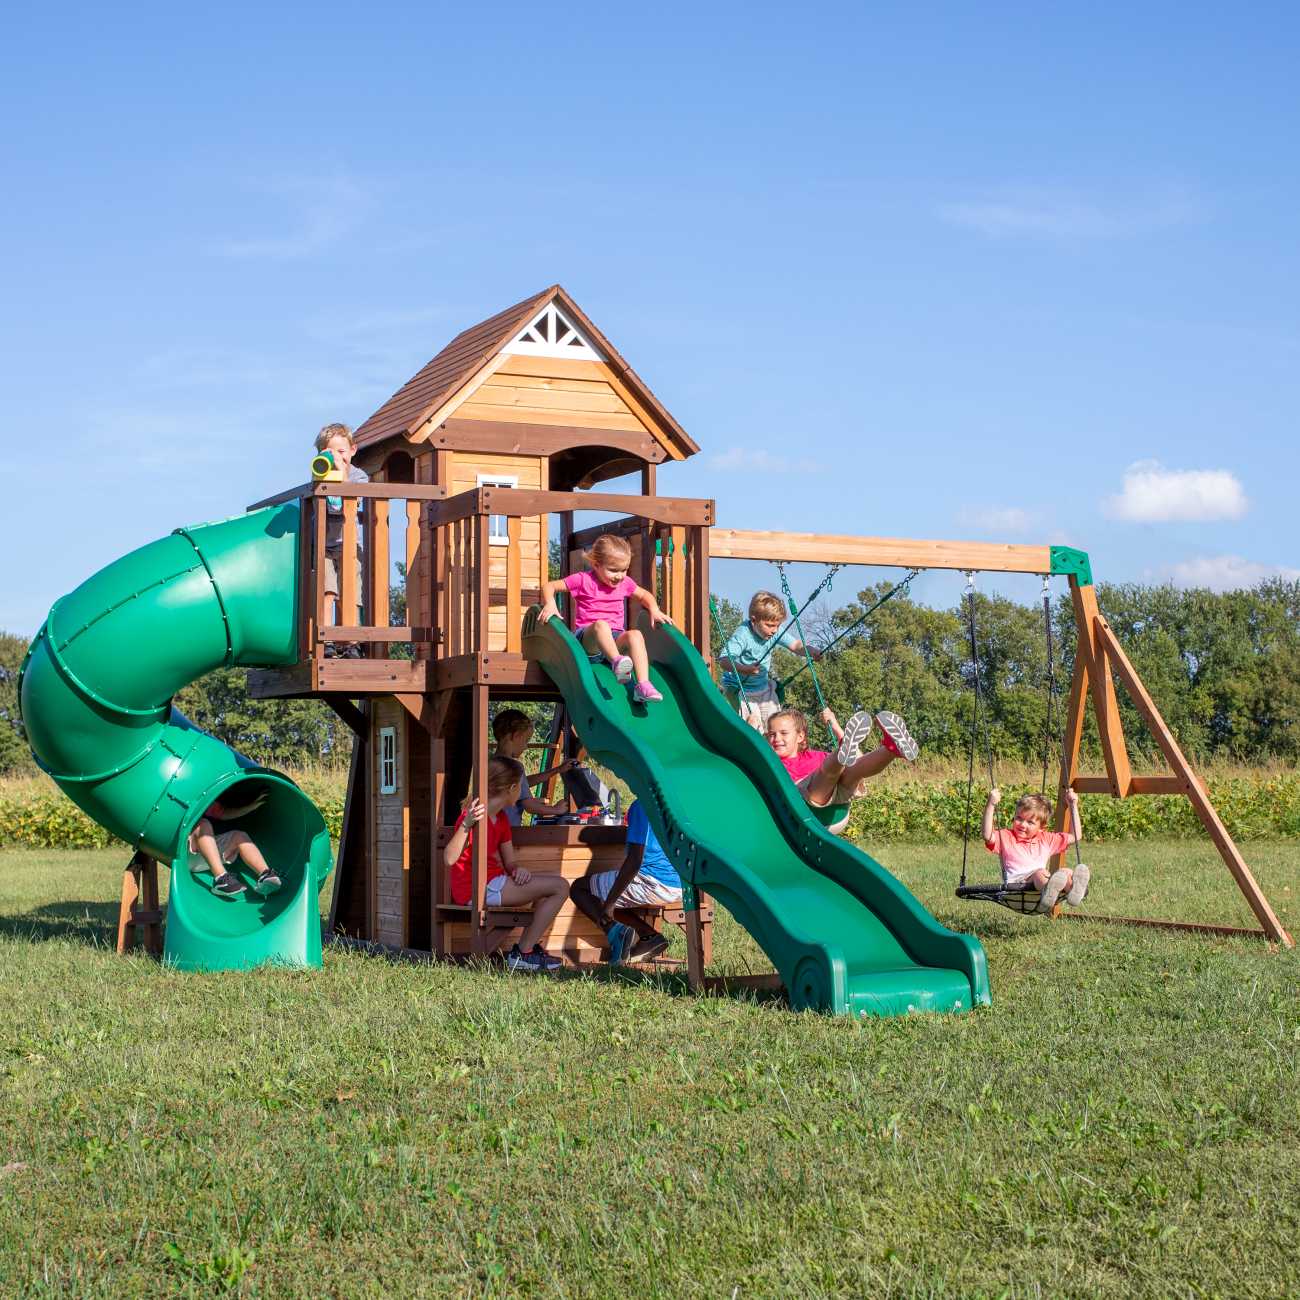 Backyard Spielturm Cedar Cove, Spielturm mit Röhrenrutsche und Nestschaukel für Kinder